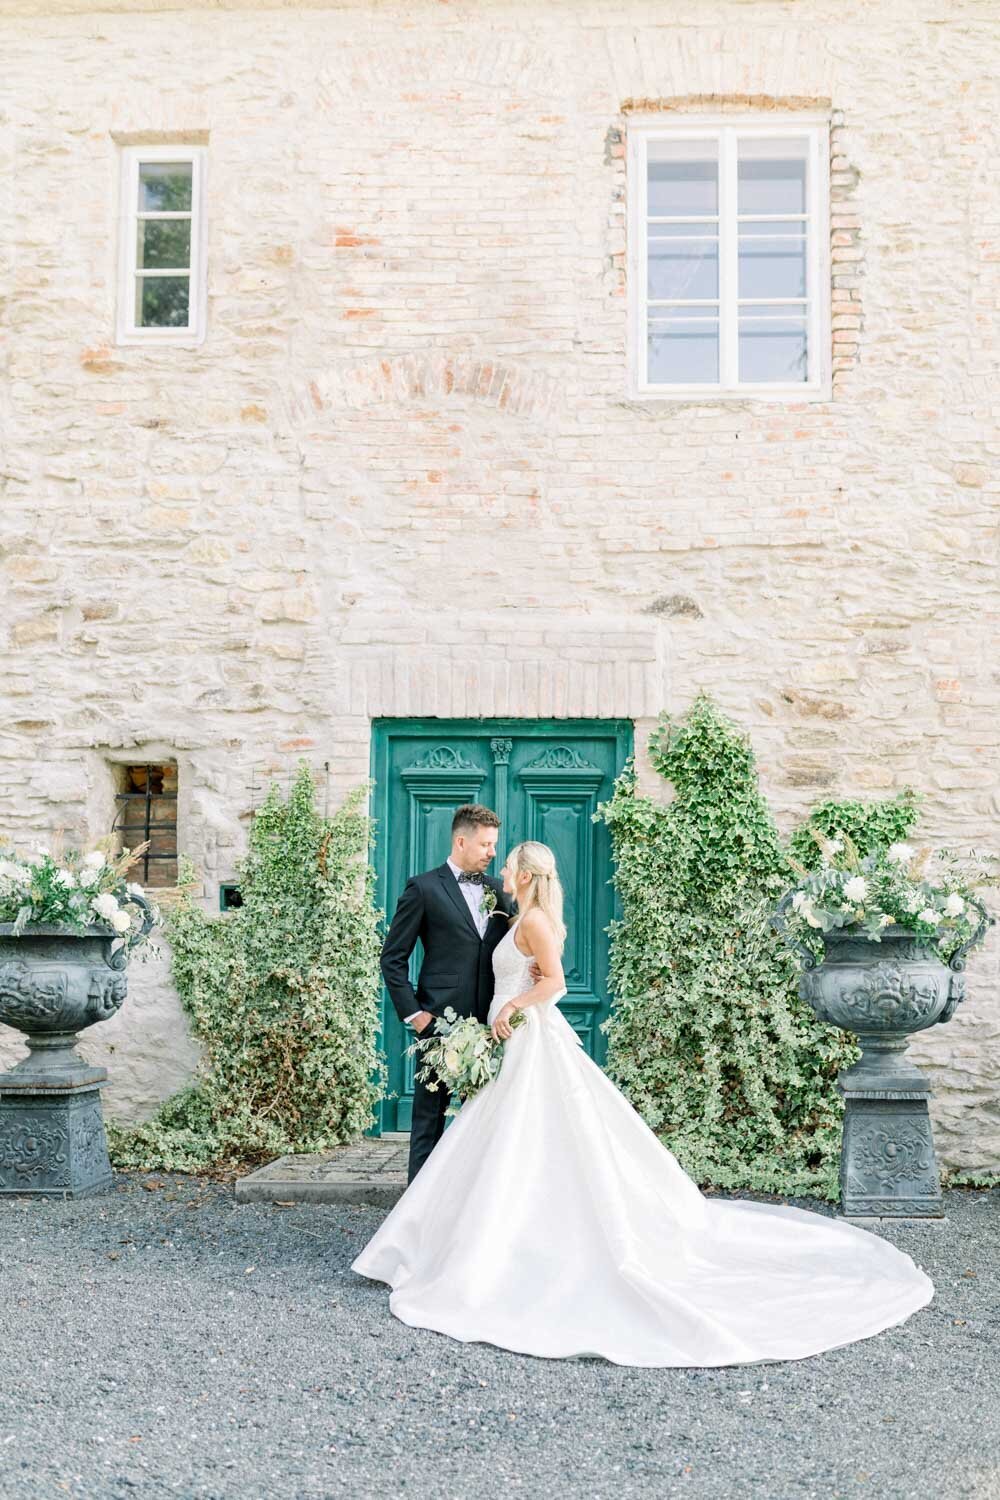 ženich a nevěsta před vilou v toskánském stylu